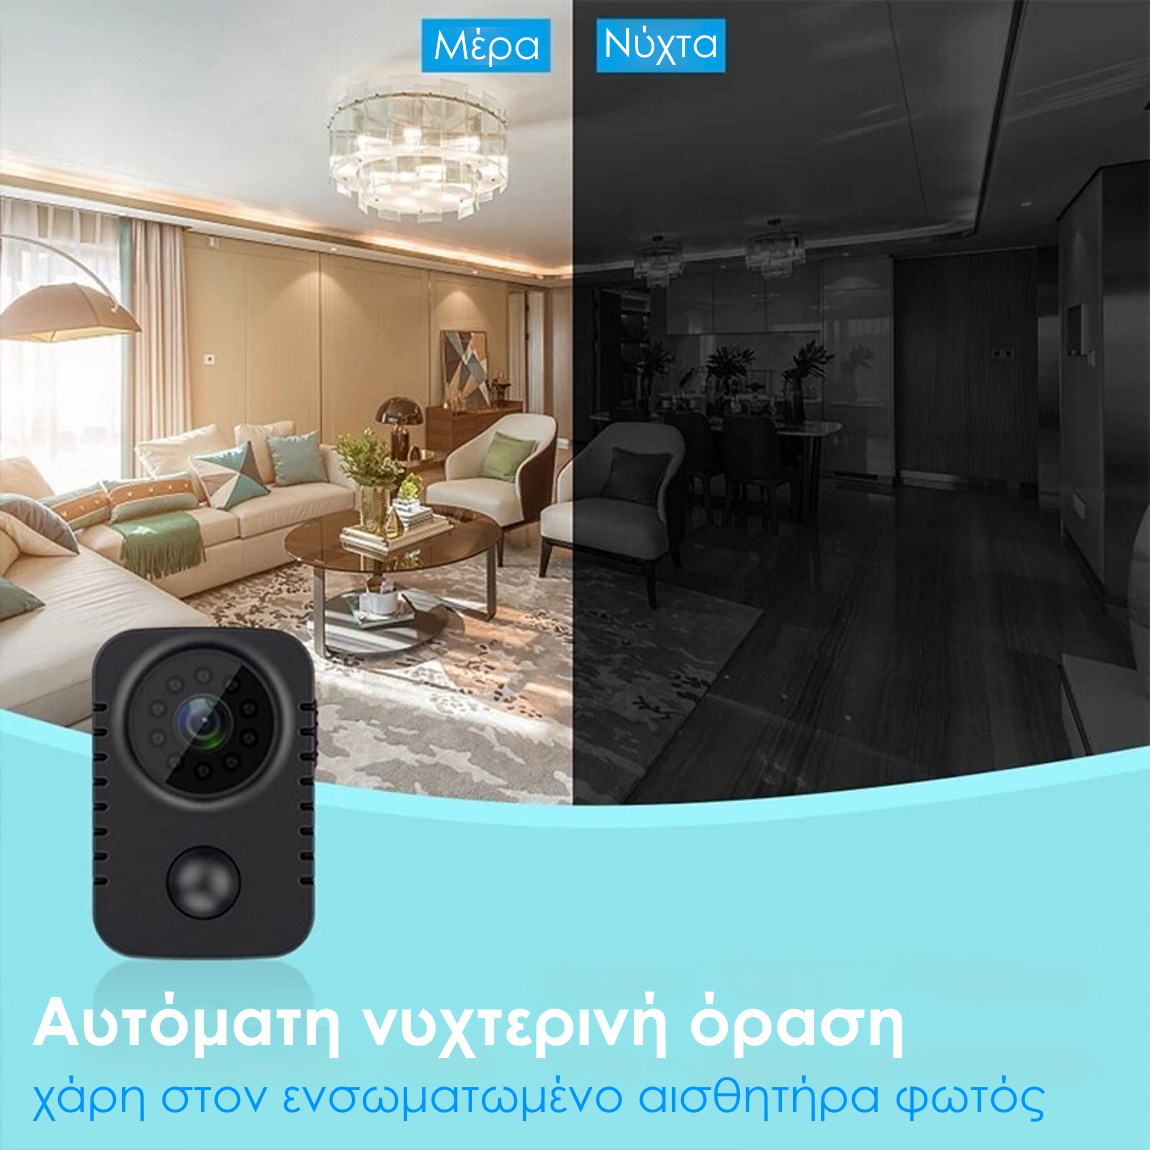 Κρυφή κάμερα Smartcent MD29 με αυτόματη νυχτερινή όραση